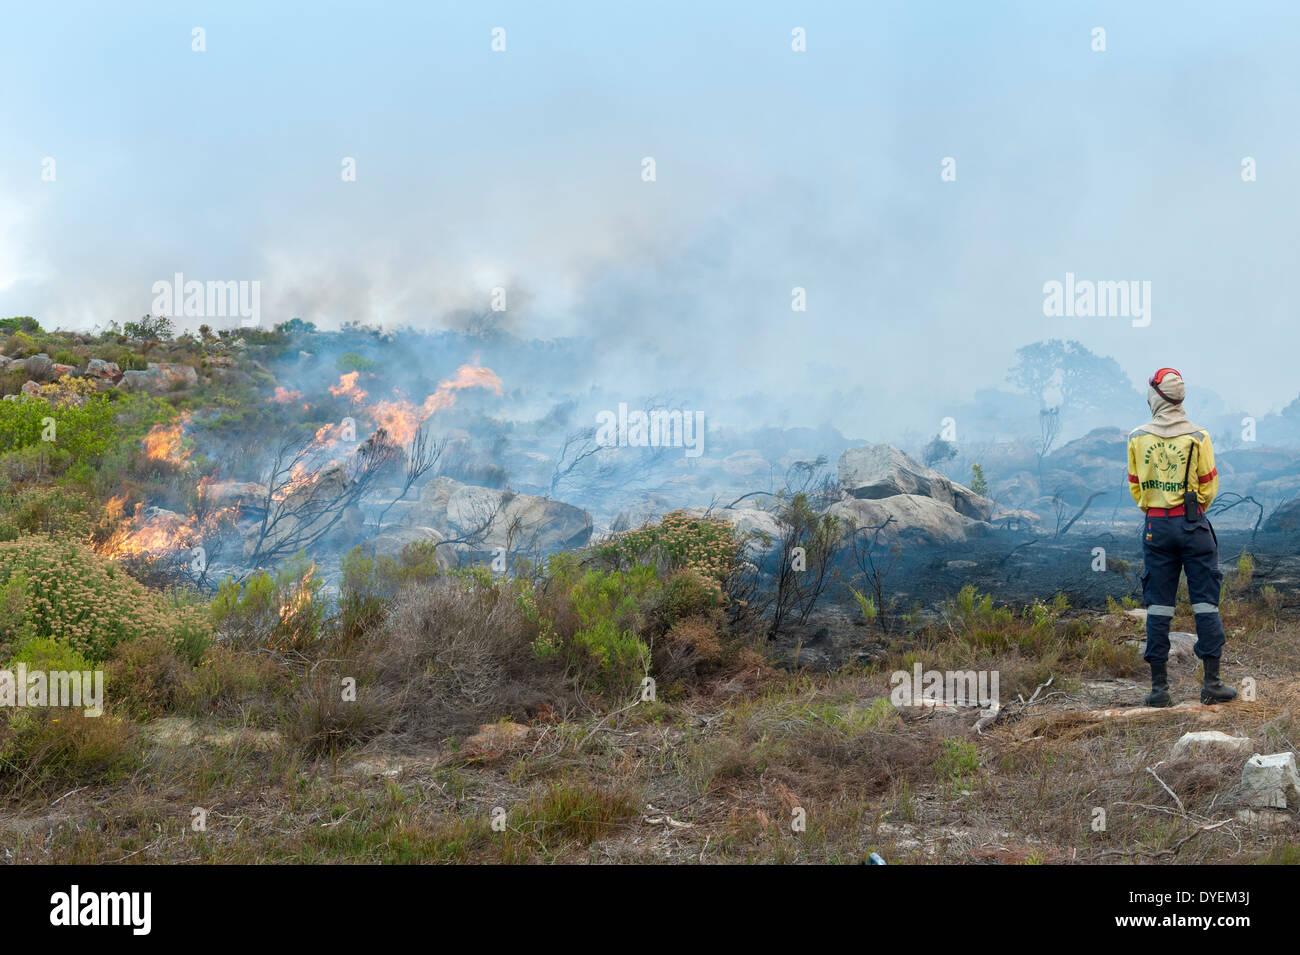 Exercices pompiers brûlage contrôlé de la végétation pour stimuler la nouvelle croissance, péninsule du Cap, Western Cape, Afrique du Sud Banque D'Images